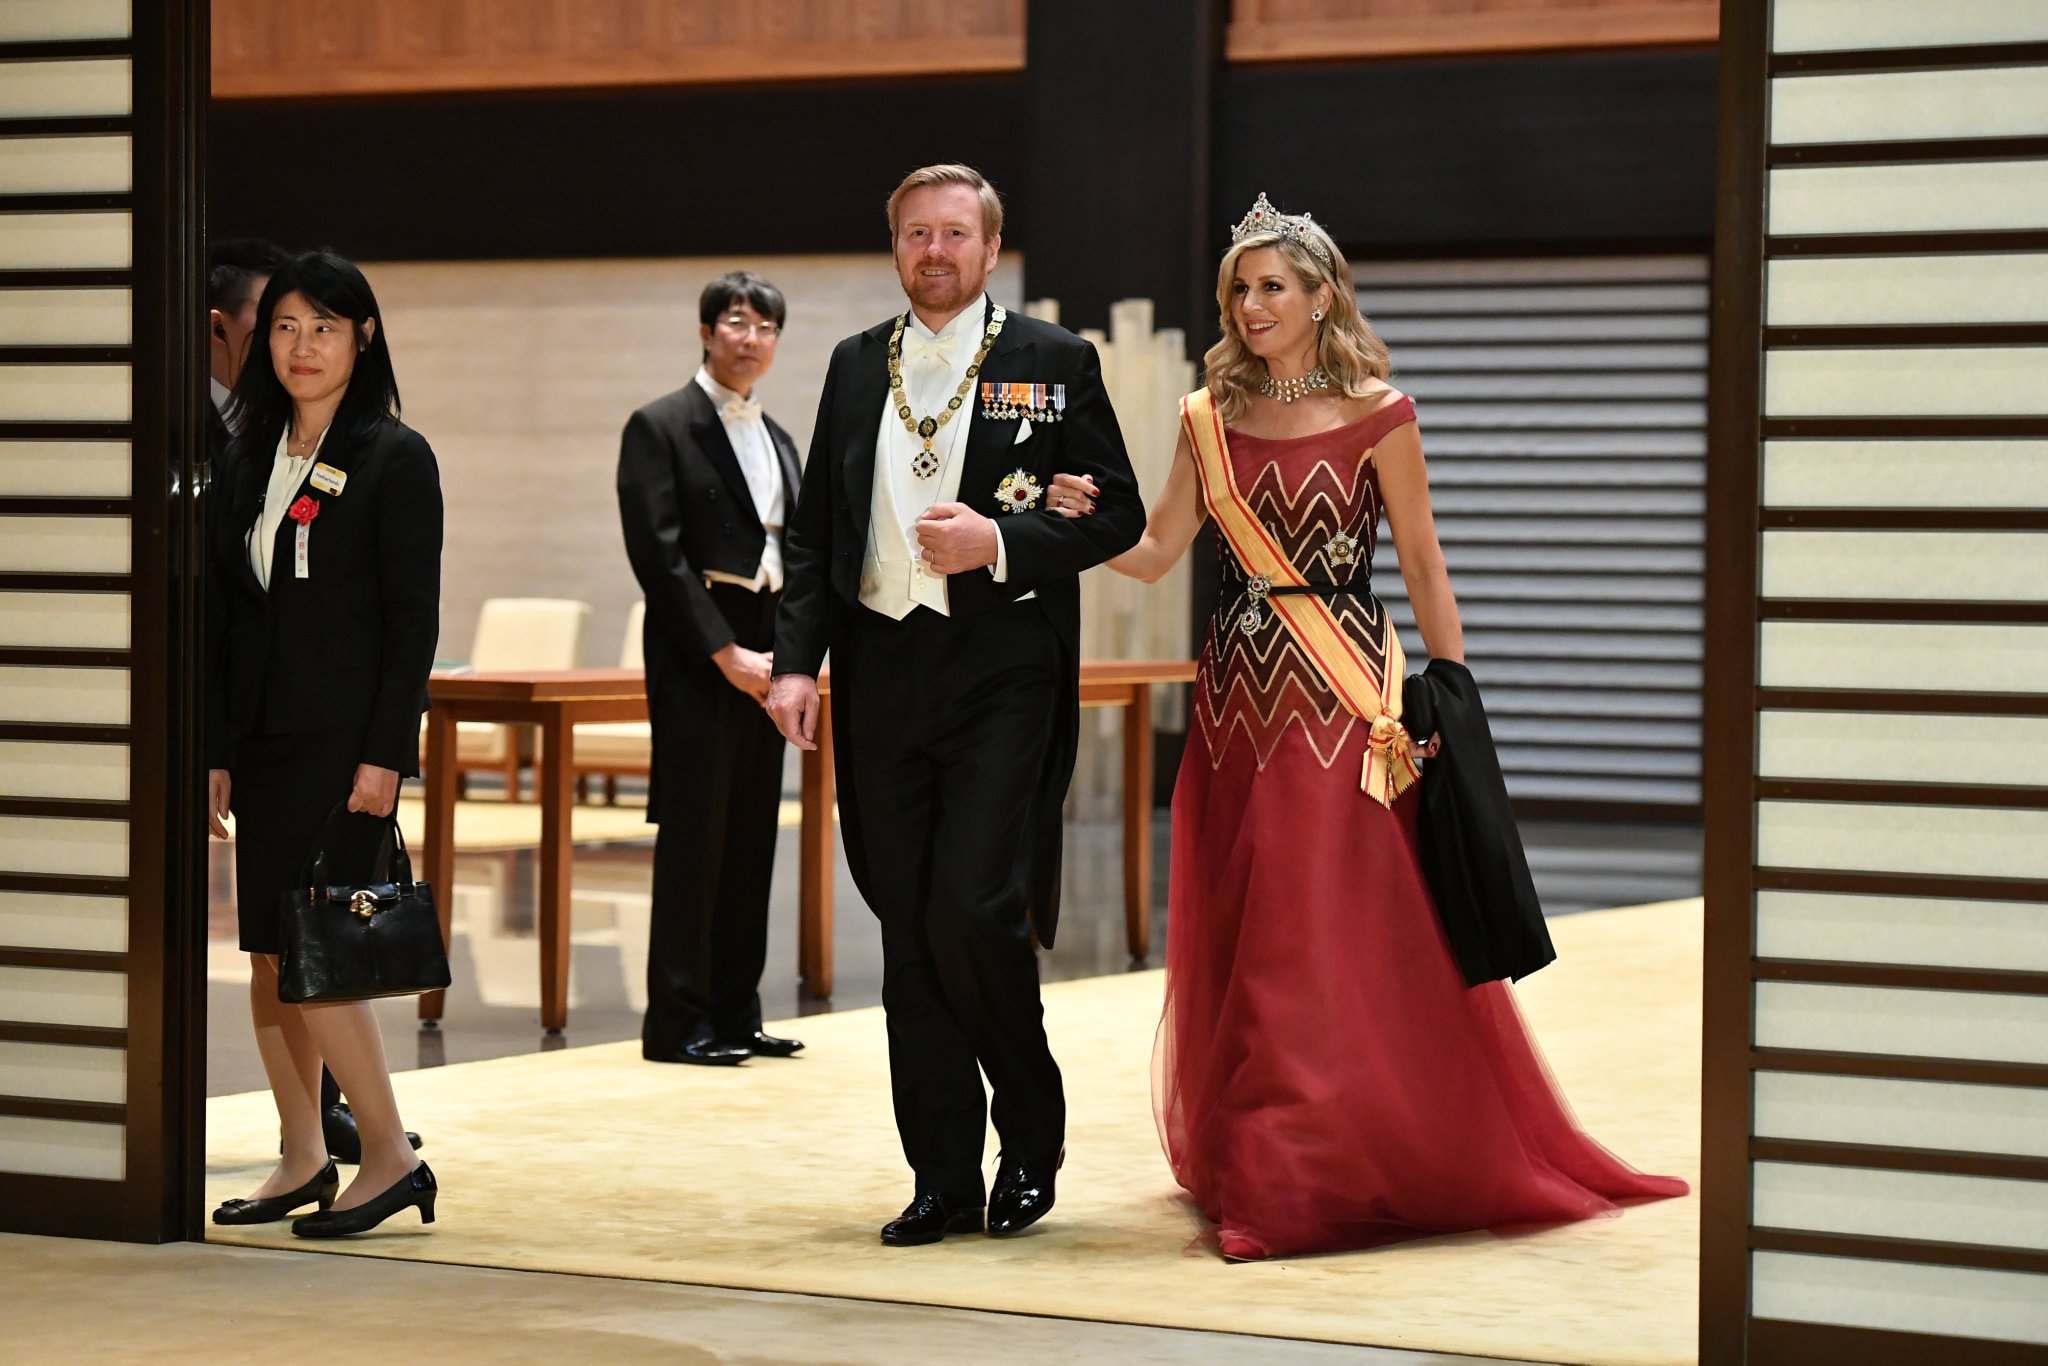 駐日オランダ王国大使館 総領事館 昨晩 ウィレム アレクサンダー国王陛下とマキシマ王妃陛下は およそ164カ国 255人の来賓とともに皇居で行われた 饗宴の儀 に出席しました